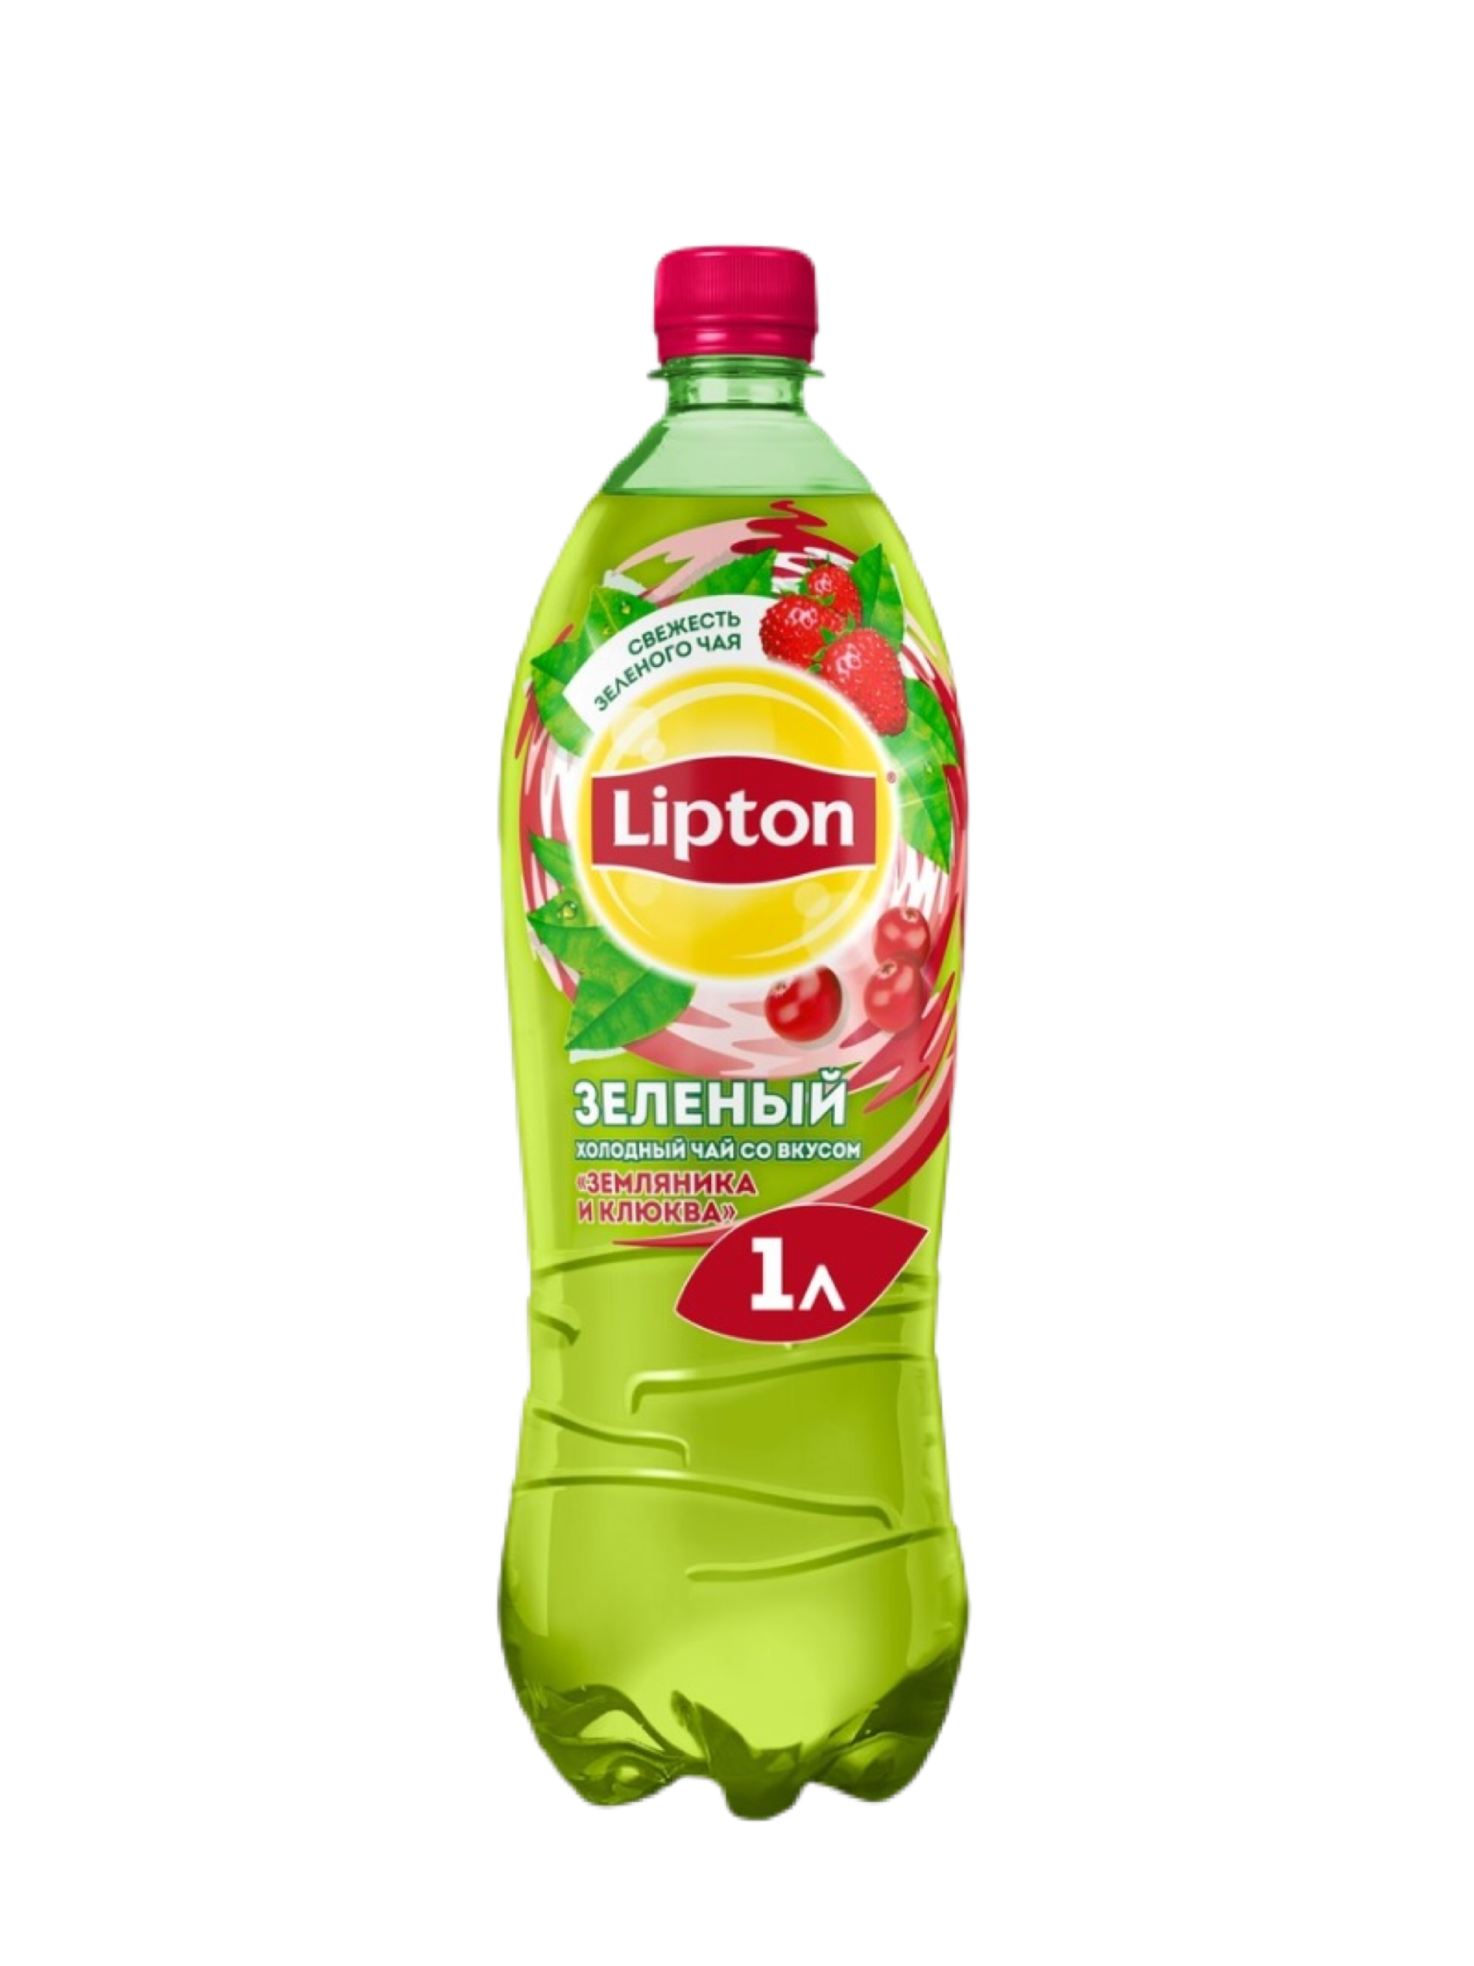 Чай Липтон 0.5 малина. Липтон зеленый с земляникой. Липтон зелёный чай в бутылке 05. Липтон 0,5 и 1 л. Зеленые холодной водой